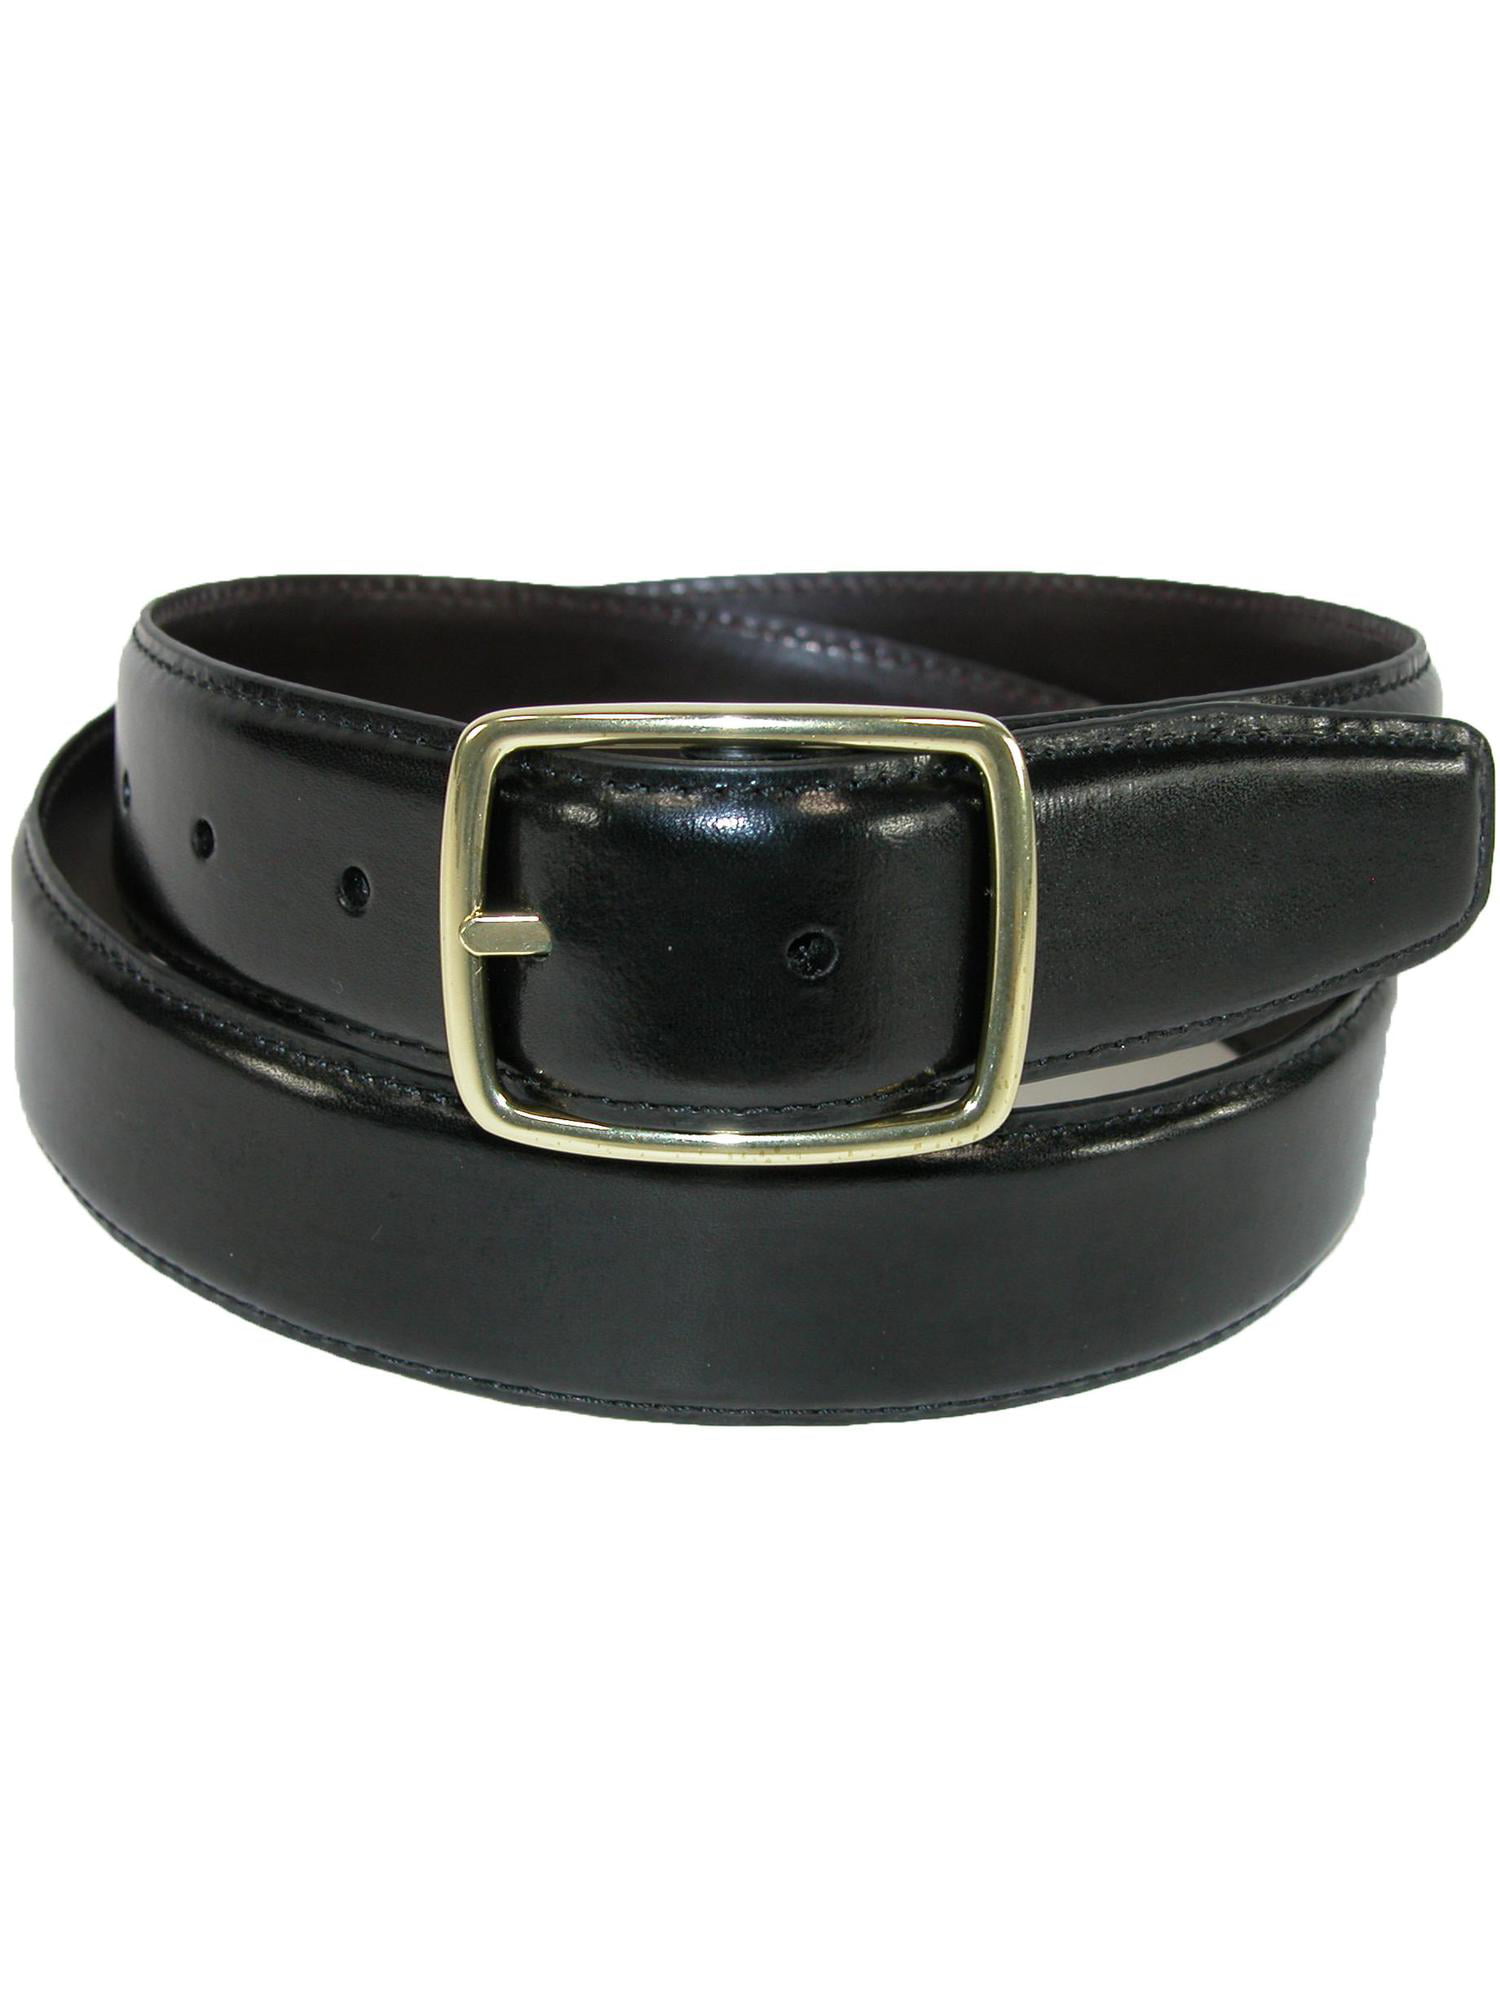 Mens Belt Reversible Wide Bonded Leather Gold-Tone Buckle HOT PINK/Black 